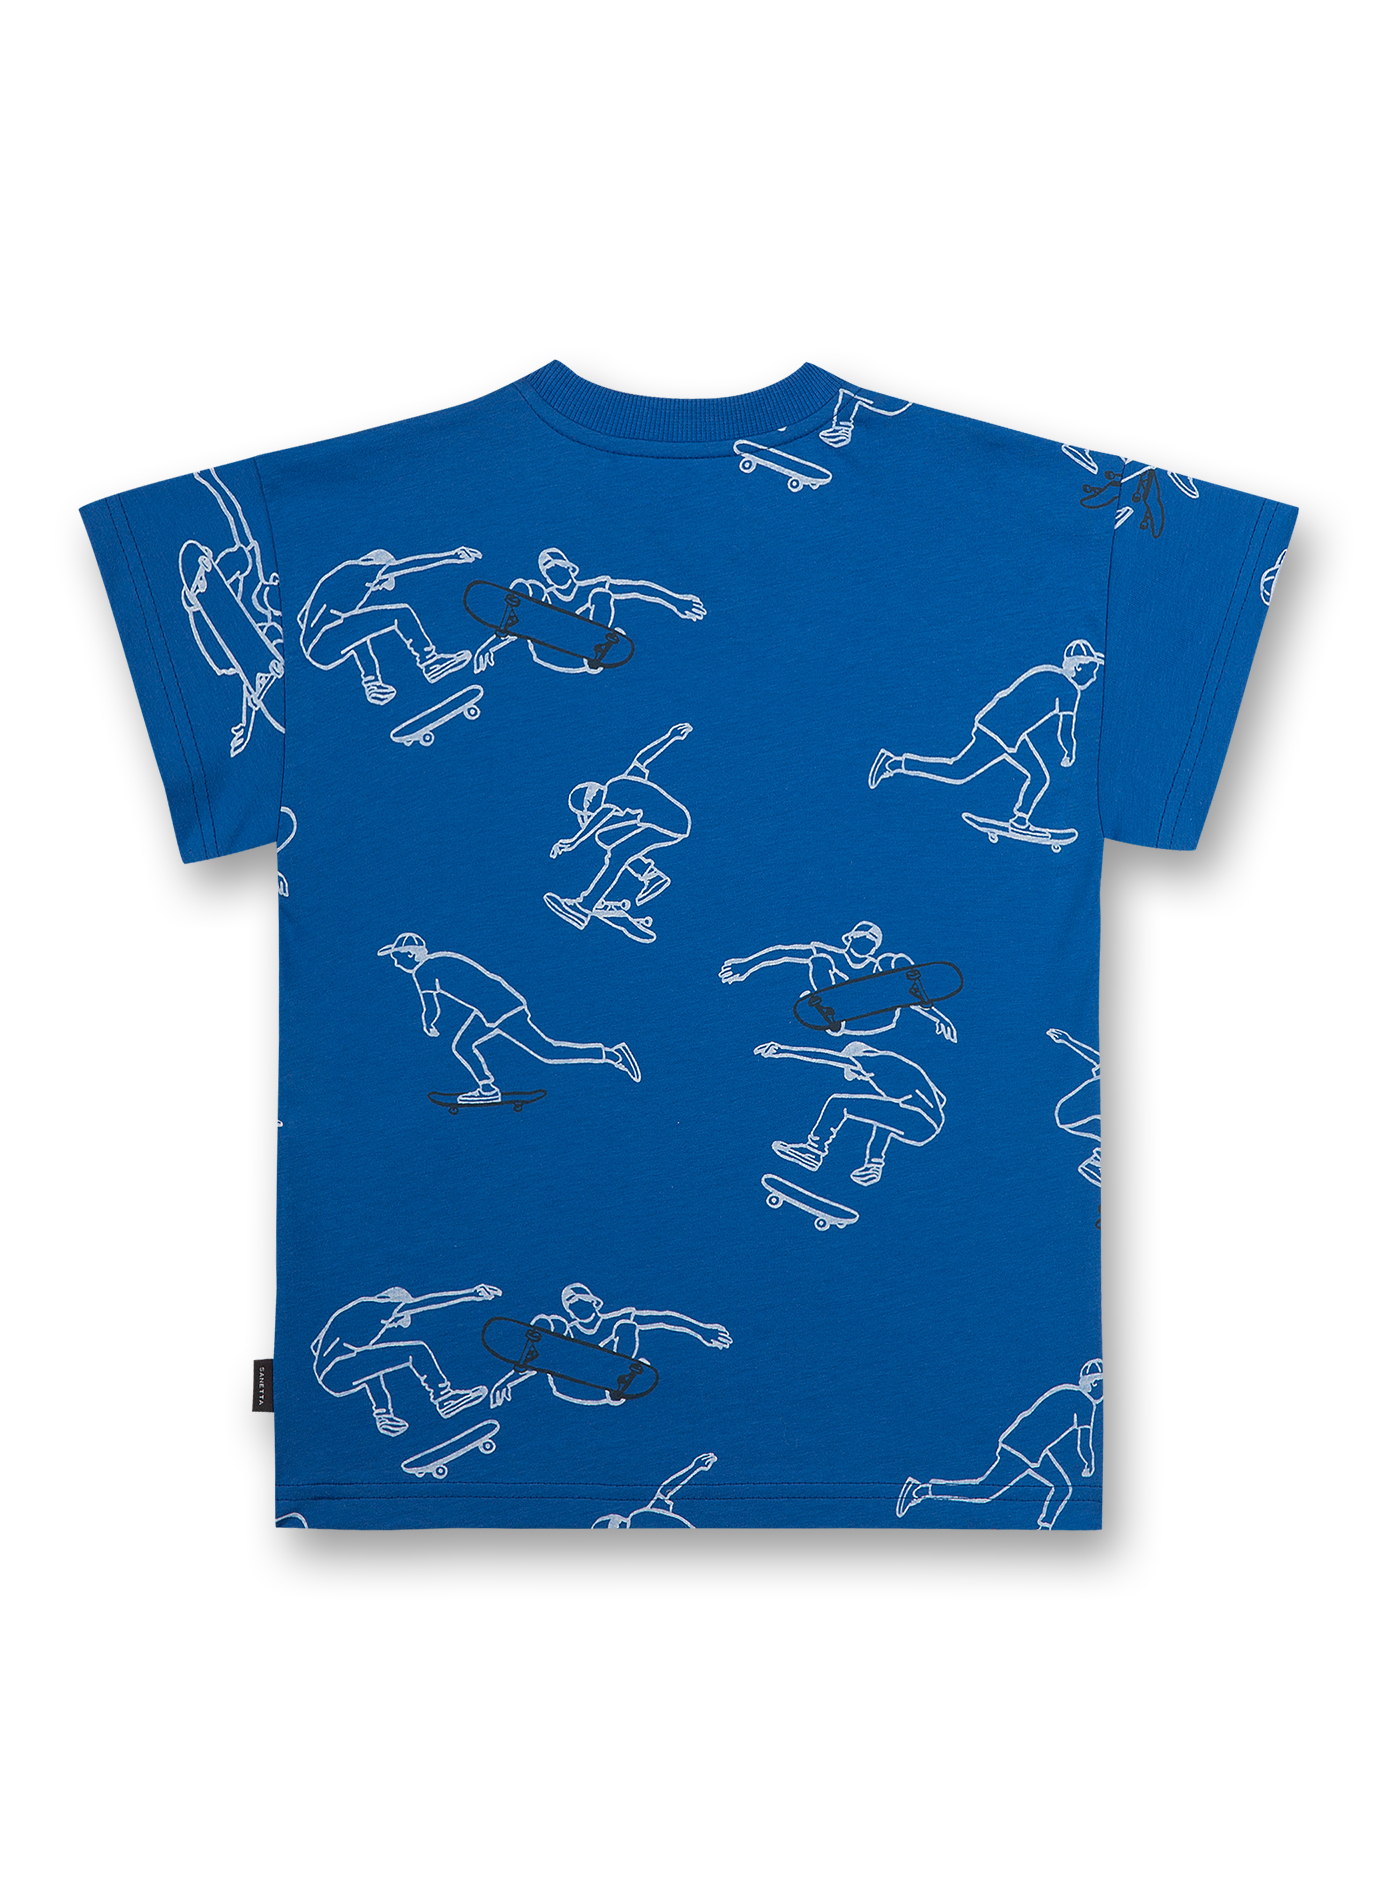 Jungen T-Shirt Blau Skate